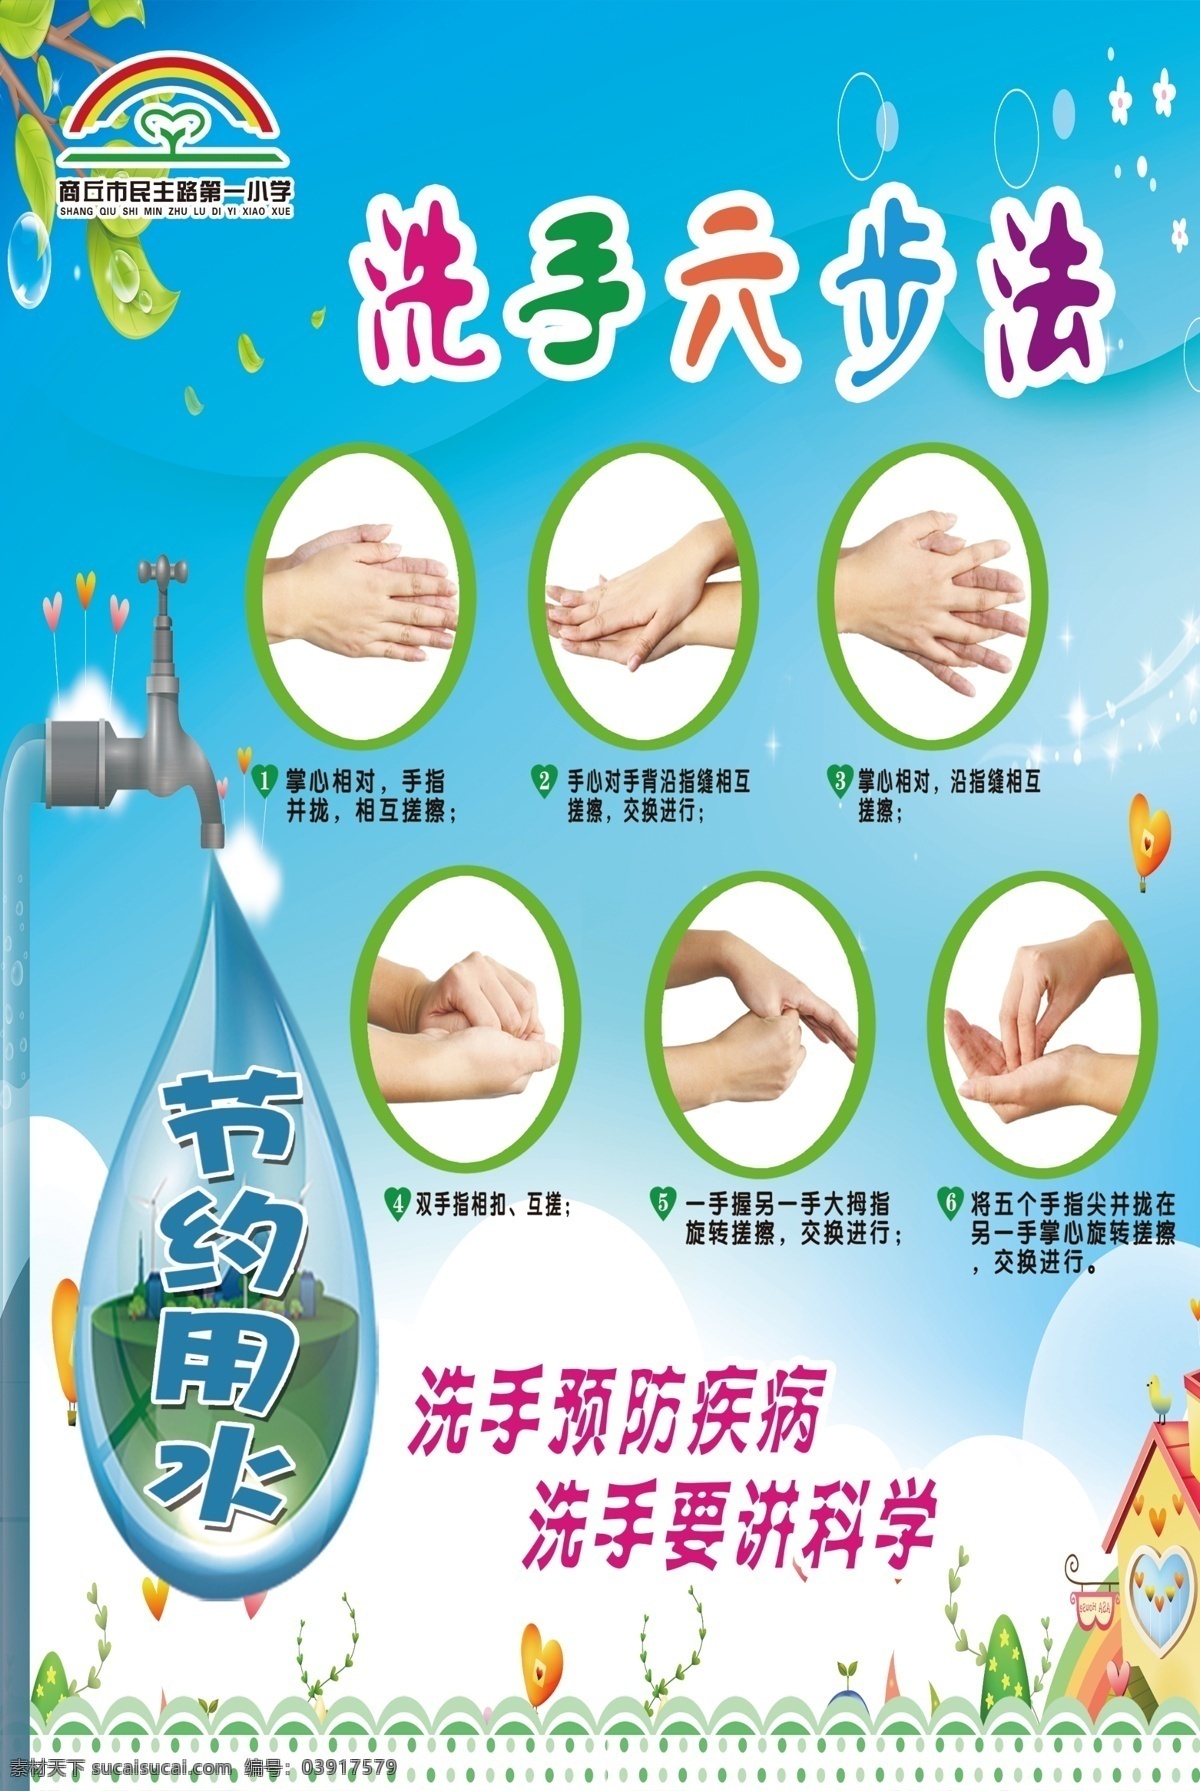 节约 用水 室外 洗手 六 步法 六步法 节约用水 室外洗手 洗手六步法